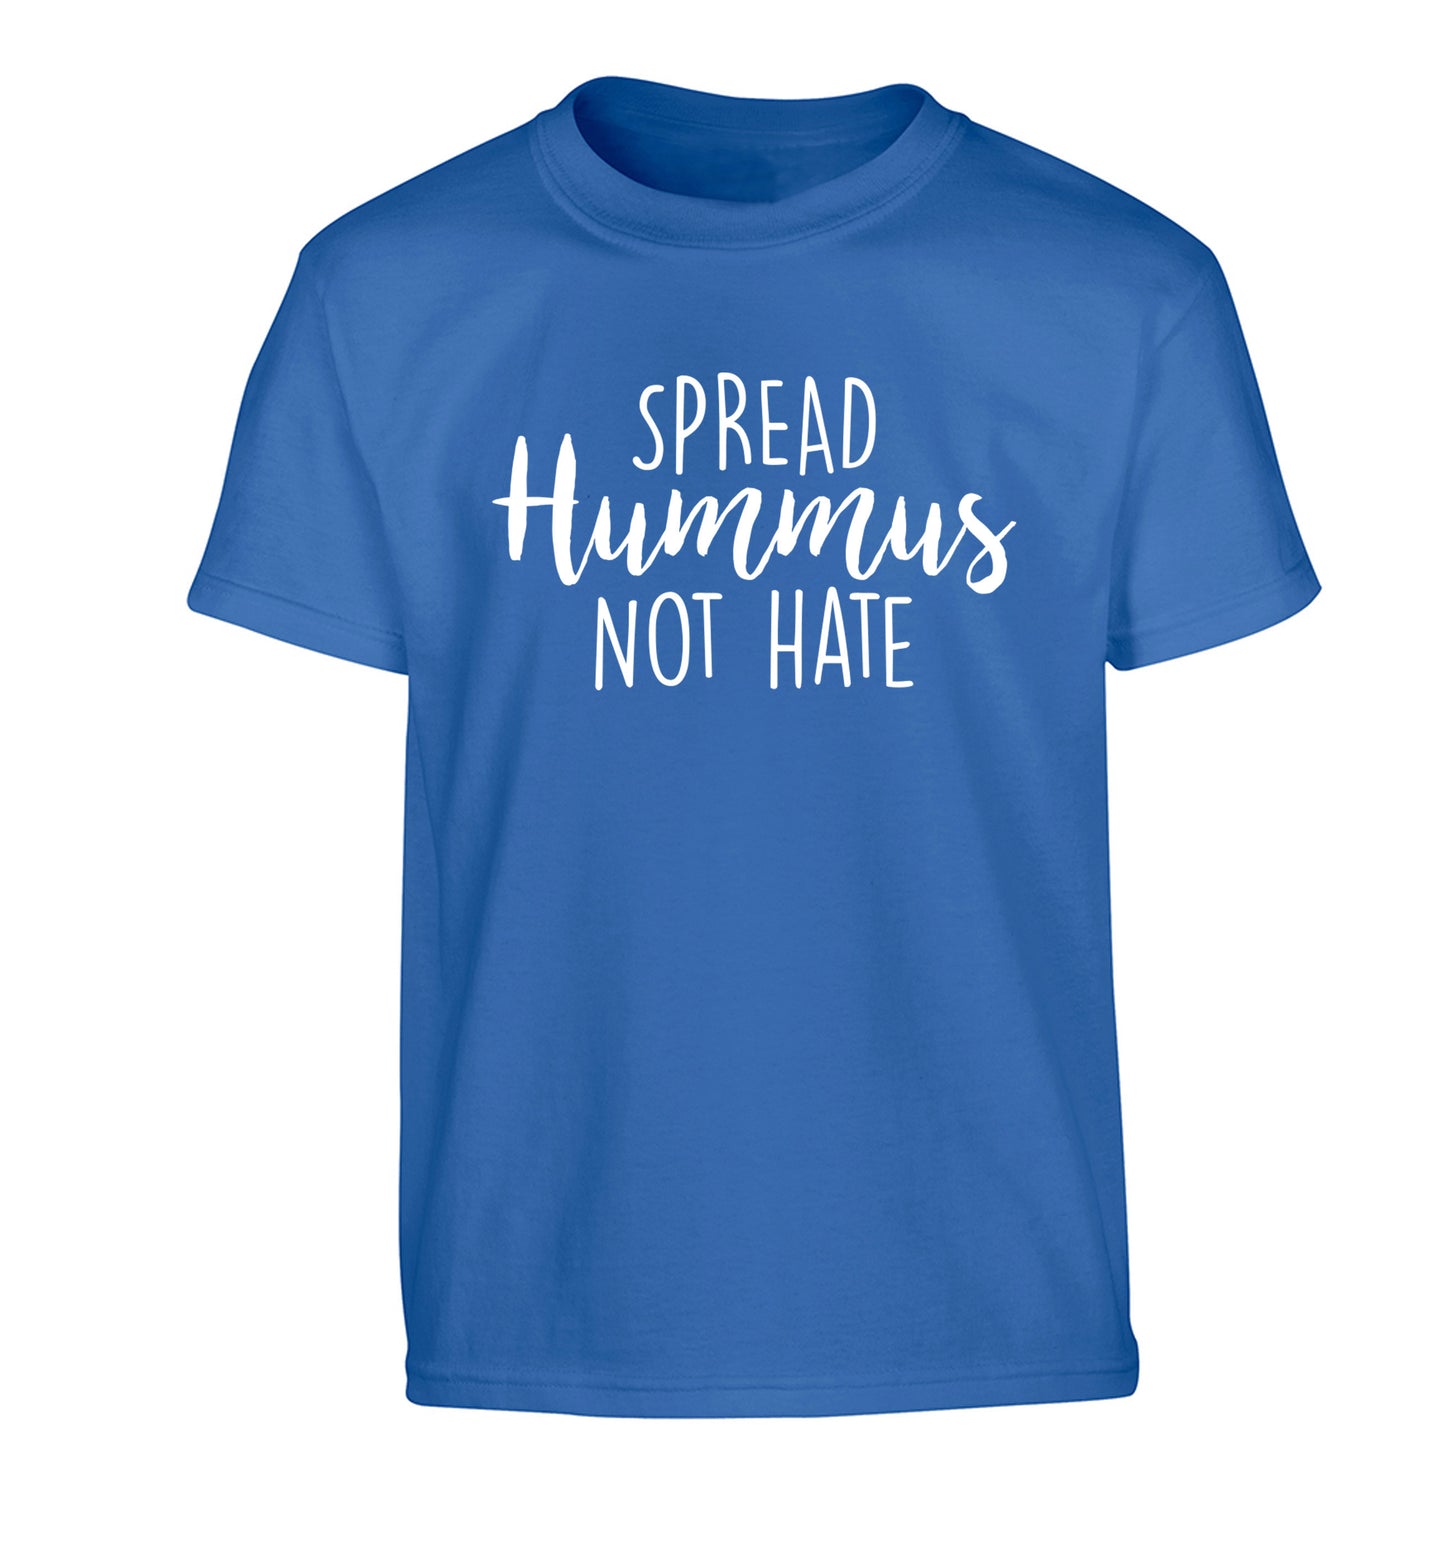 Spread hummus not hate script text Children's blue Tshirt 12-14 Years